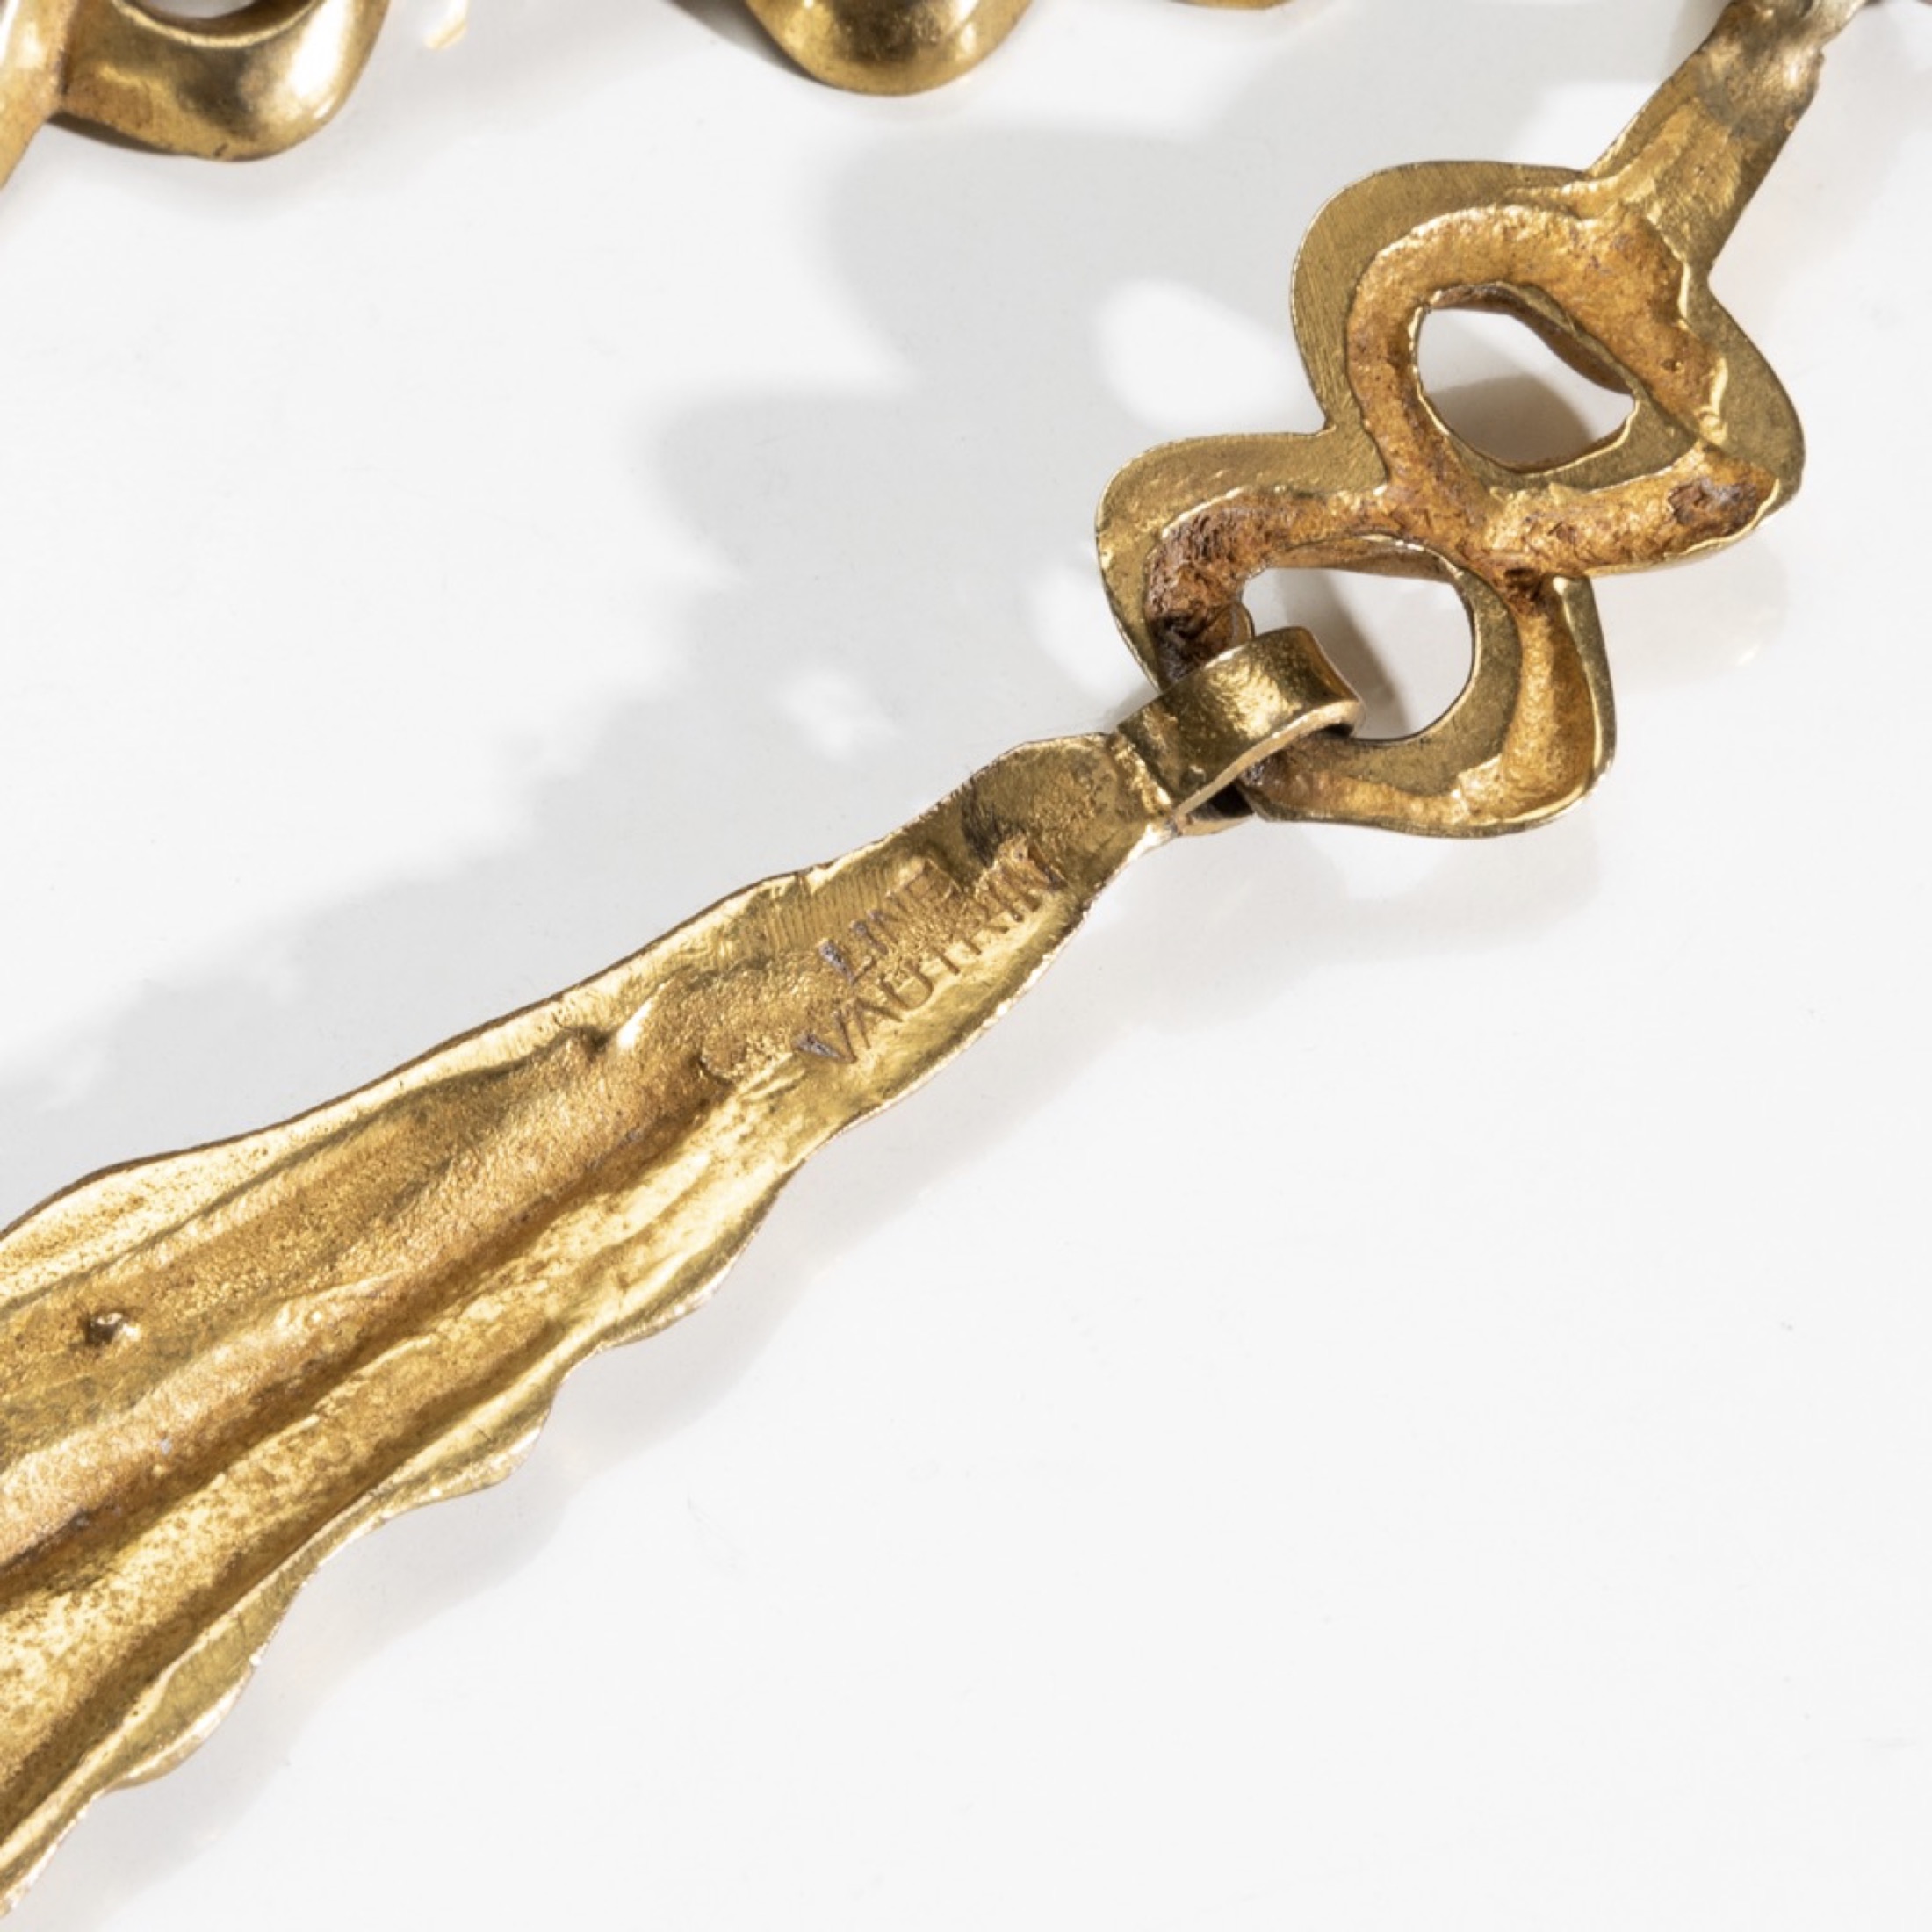 ZF46 Aiguillette, gilt bronze necklace Line Vautrin-6